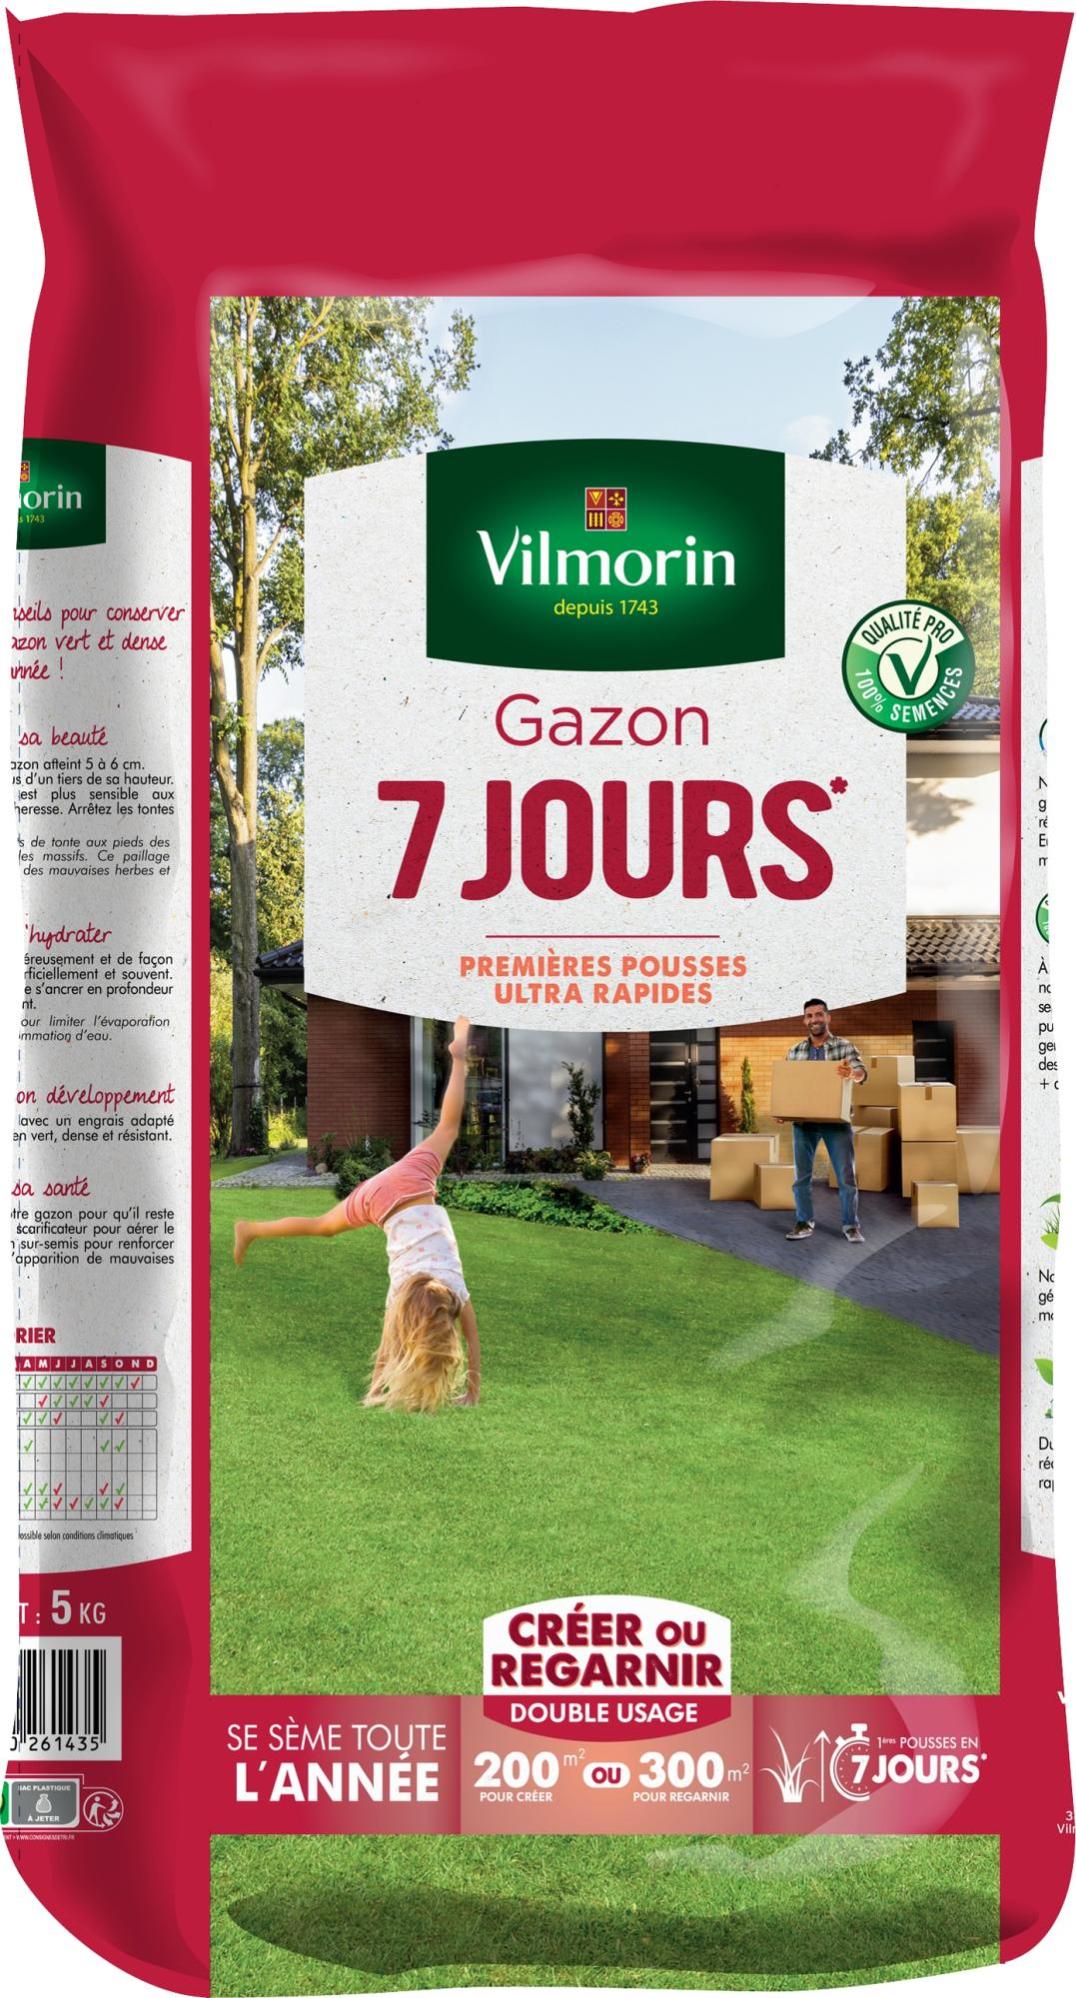 Gazon 7 jours VILMORIN, 5 kg, 200 m²